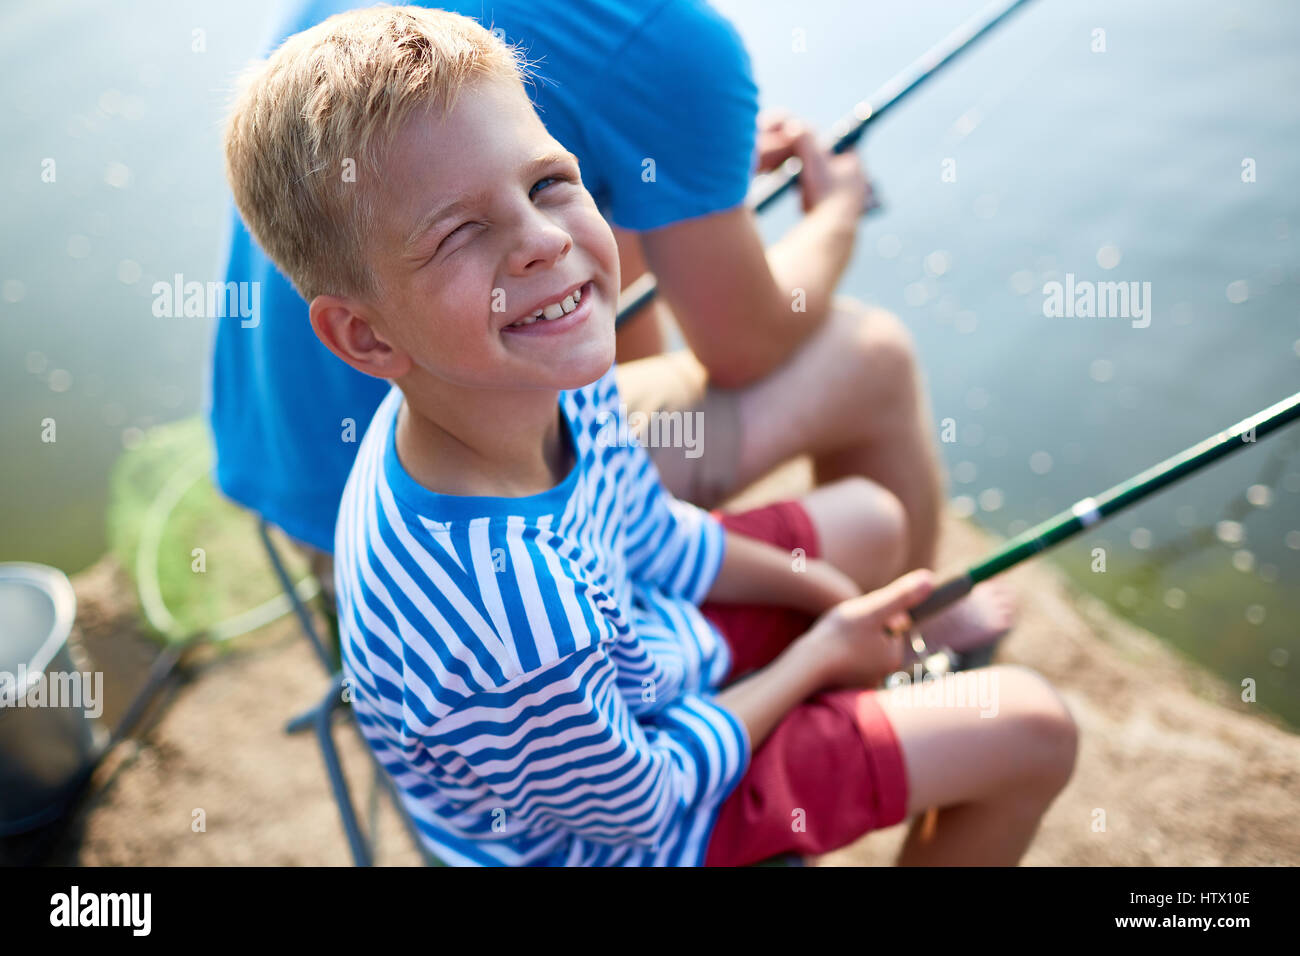 Photo of Little Boy Fishing Stock Photo - Image of nature, pontoon: 28251582